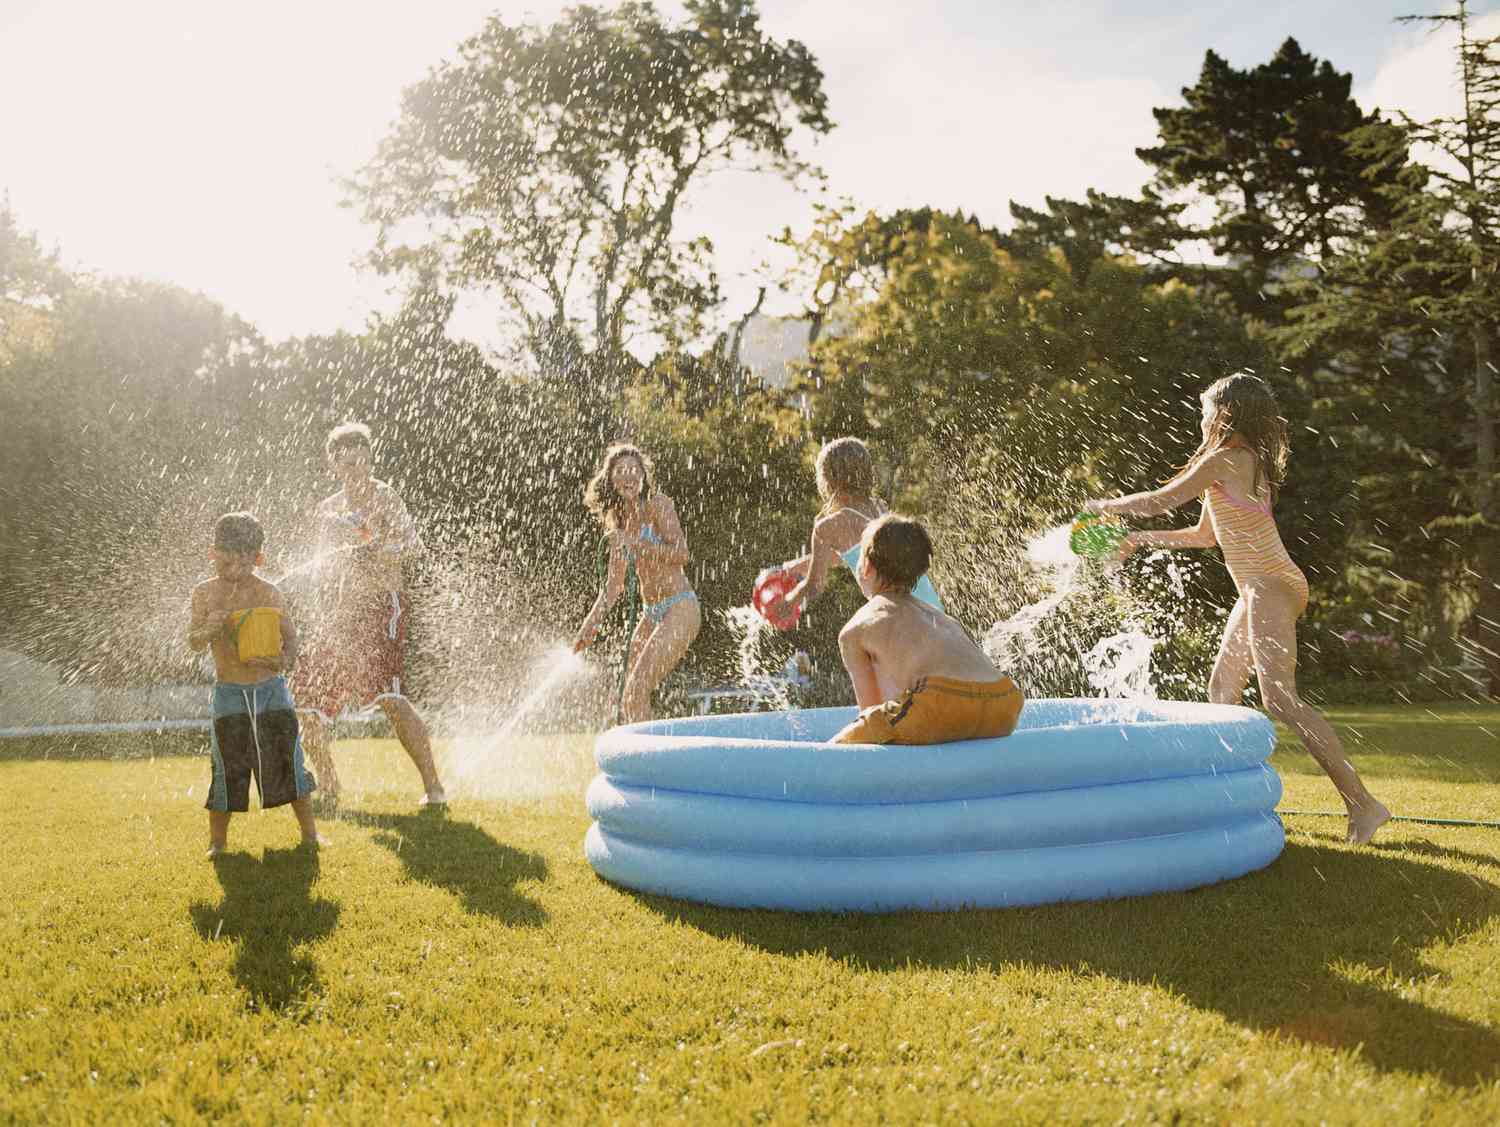 Una piscina infantil azul en el césped con niños haciendo una guerra de agua.